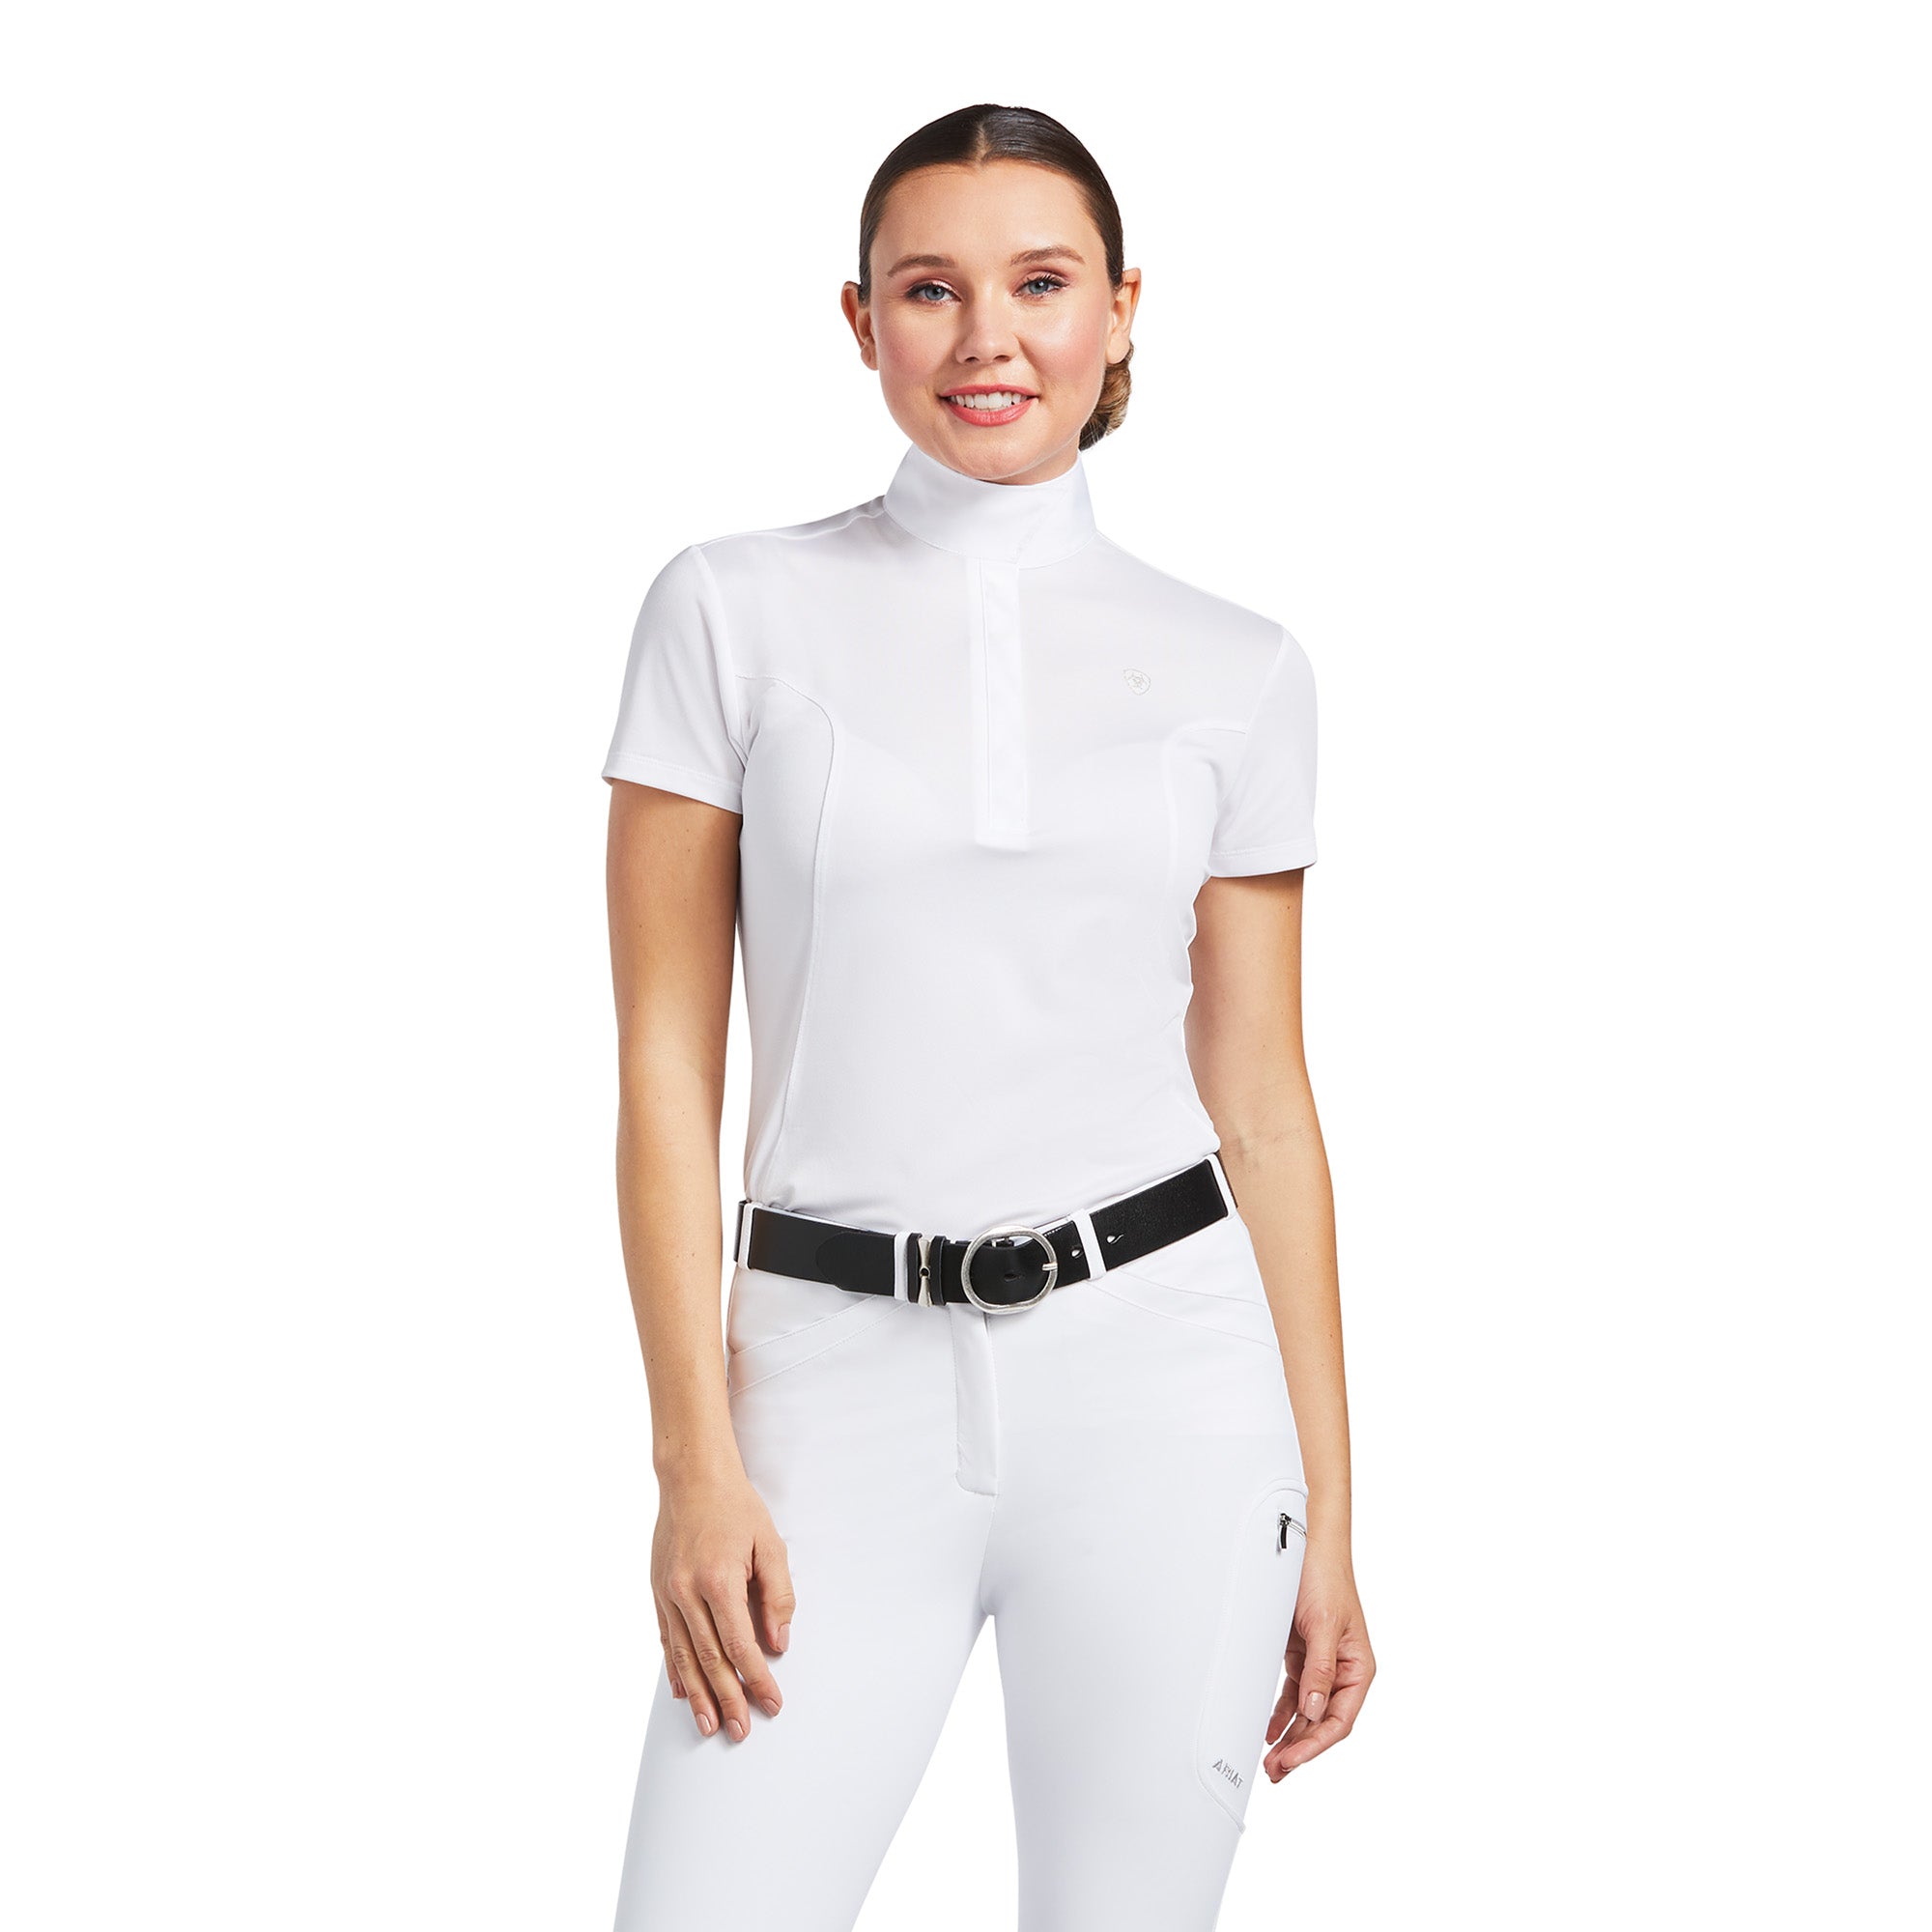 Womens Aptos Show Shirt - White